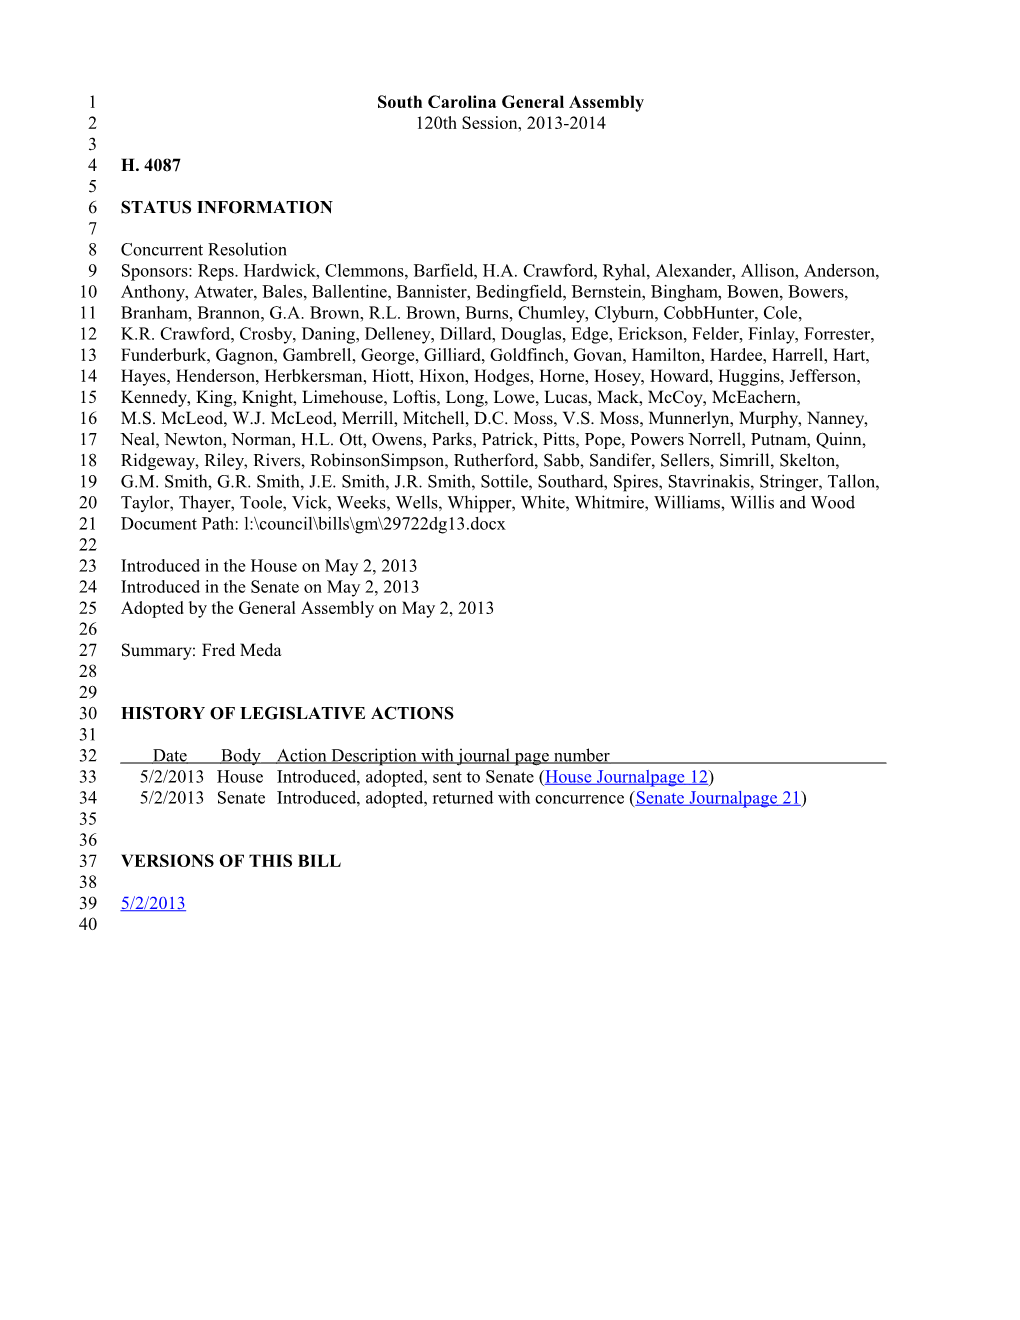 2013-2014 Bill 4087: Fred Meda - South Carolina Legislature Online